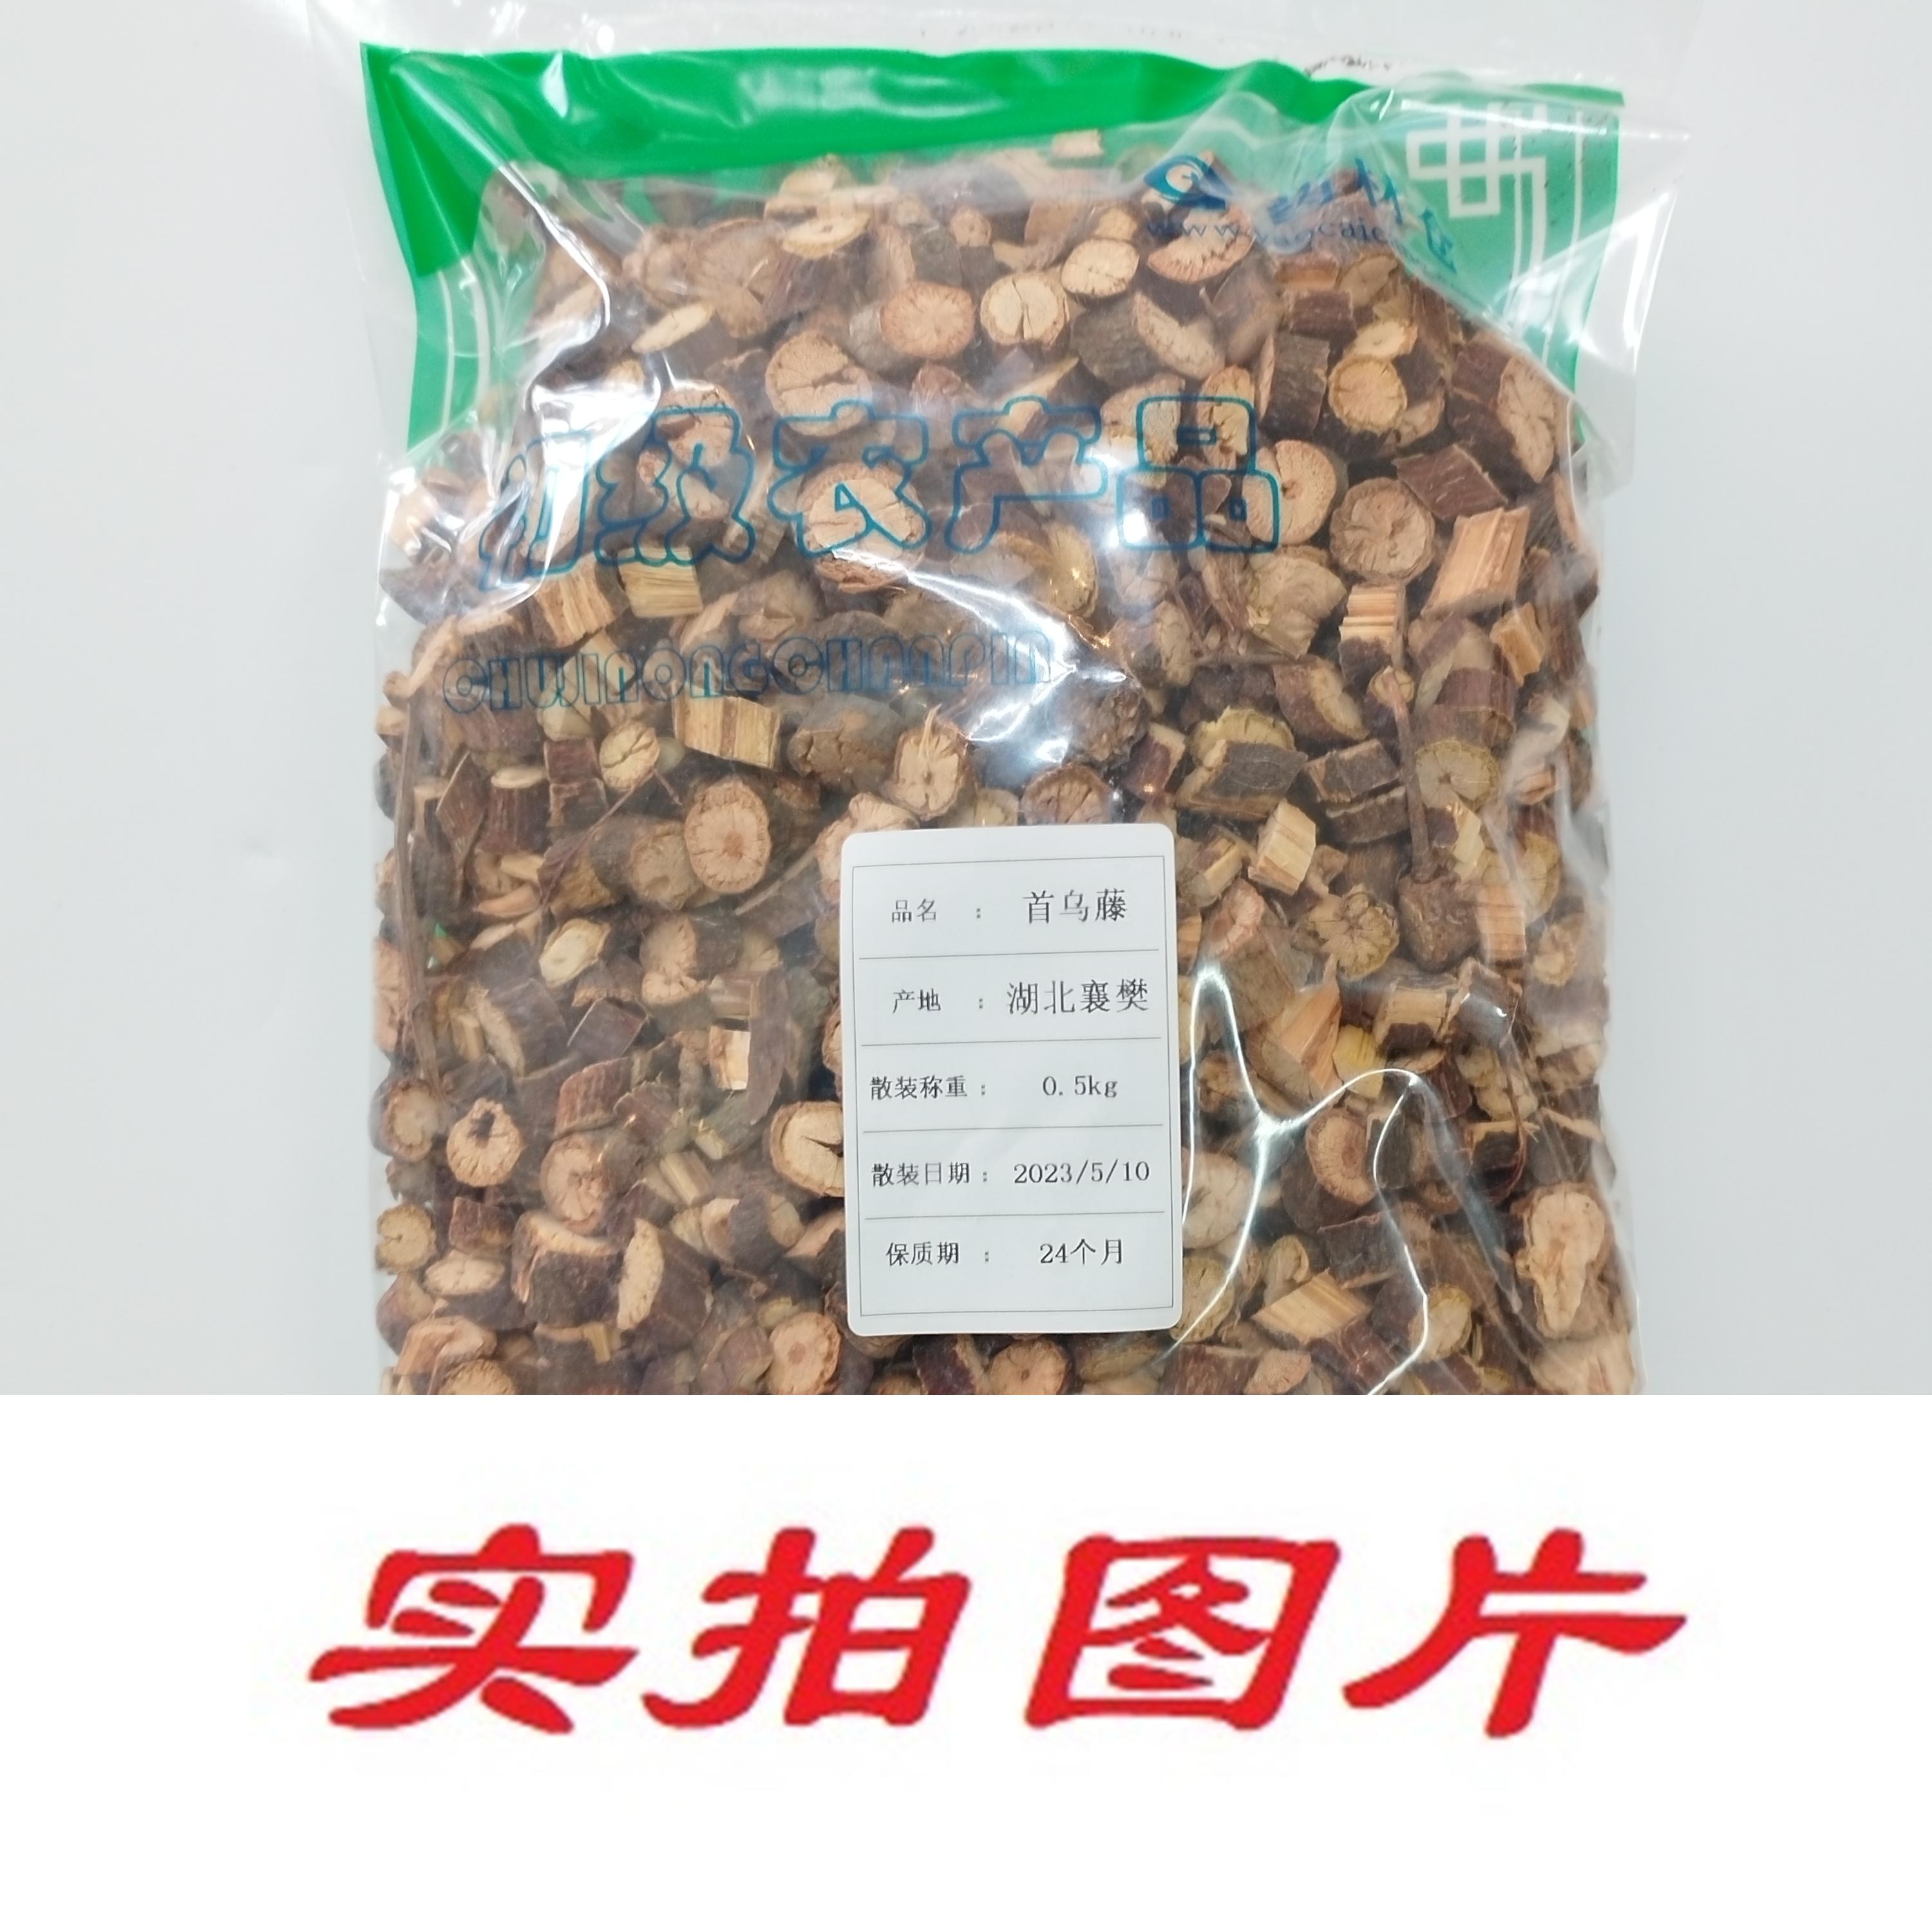 【】首乌藤0.5kg-农副产品